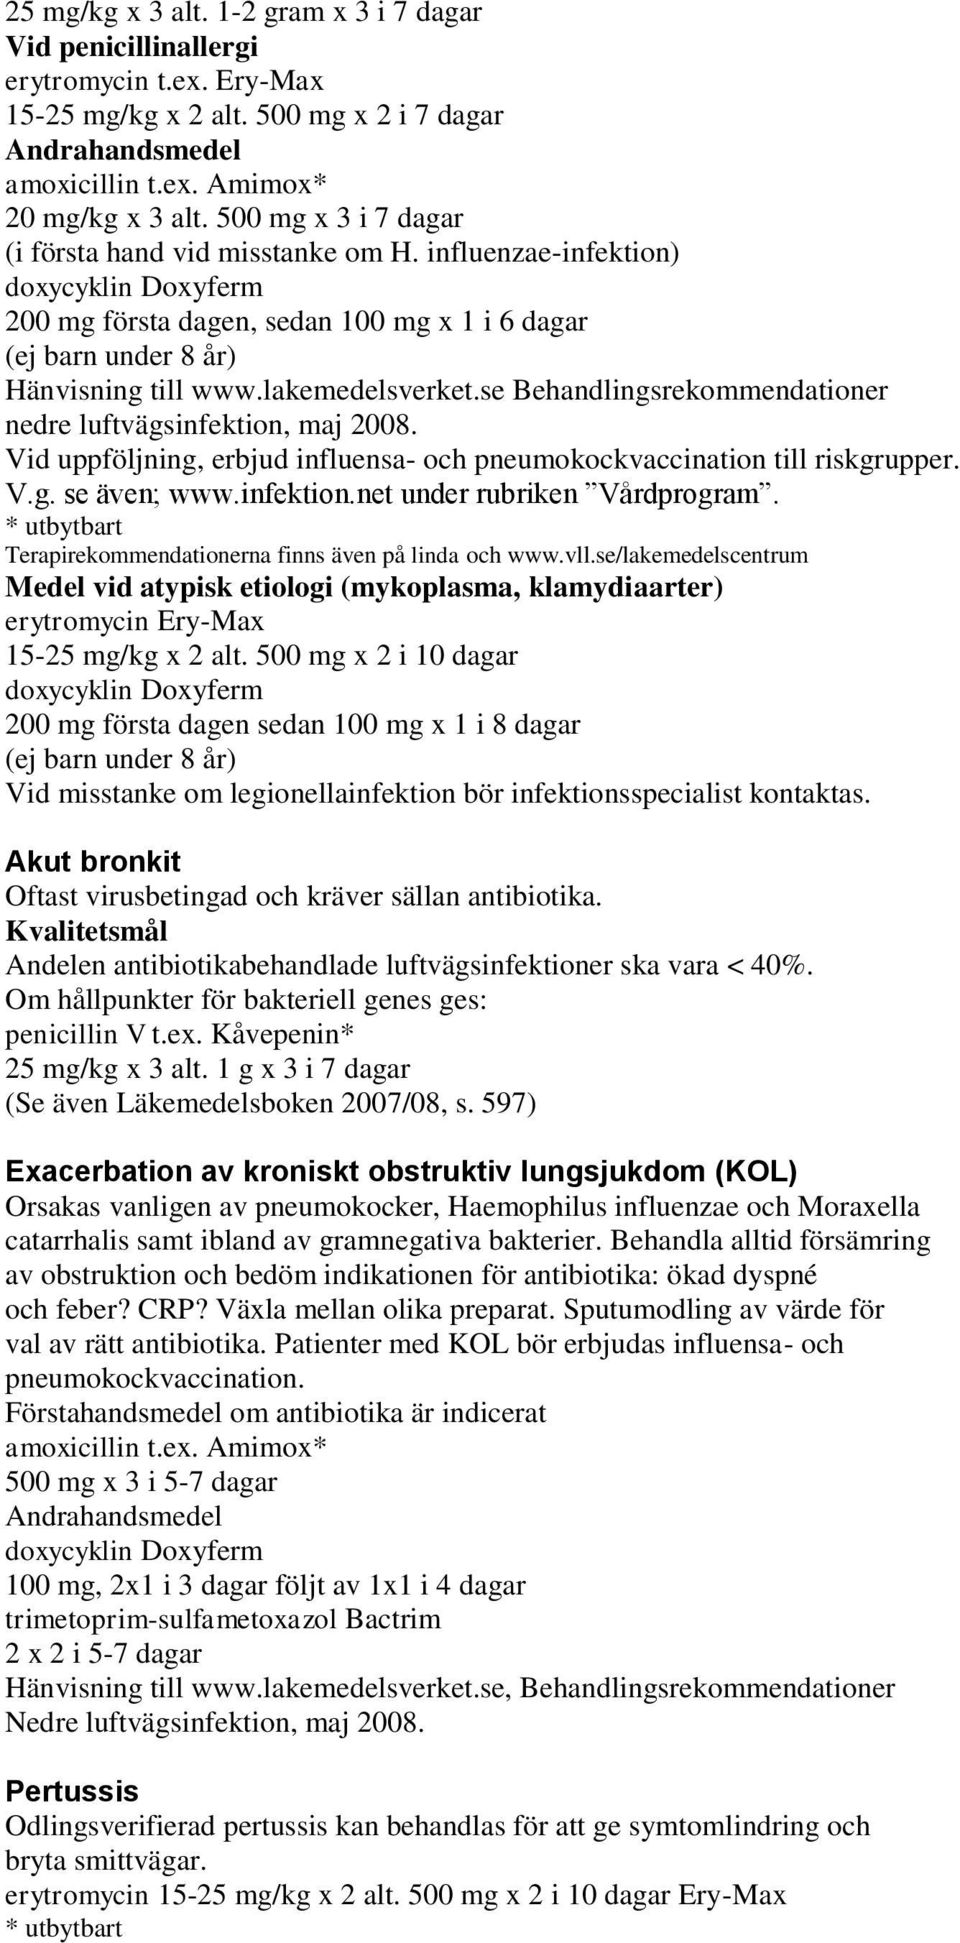 lakemedelsverket.se Behandlingsrekommendationer nedre luftvägsinfektion, maj 2008. Vid uppföljning, erbjud influensa- och pneumokockvaccination till riskgrupper. V.g. se även; www.infektion.net under rubriken Vårdprogram.